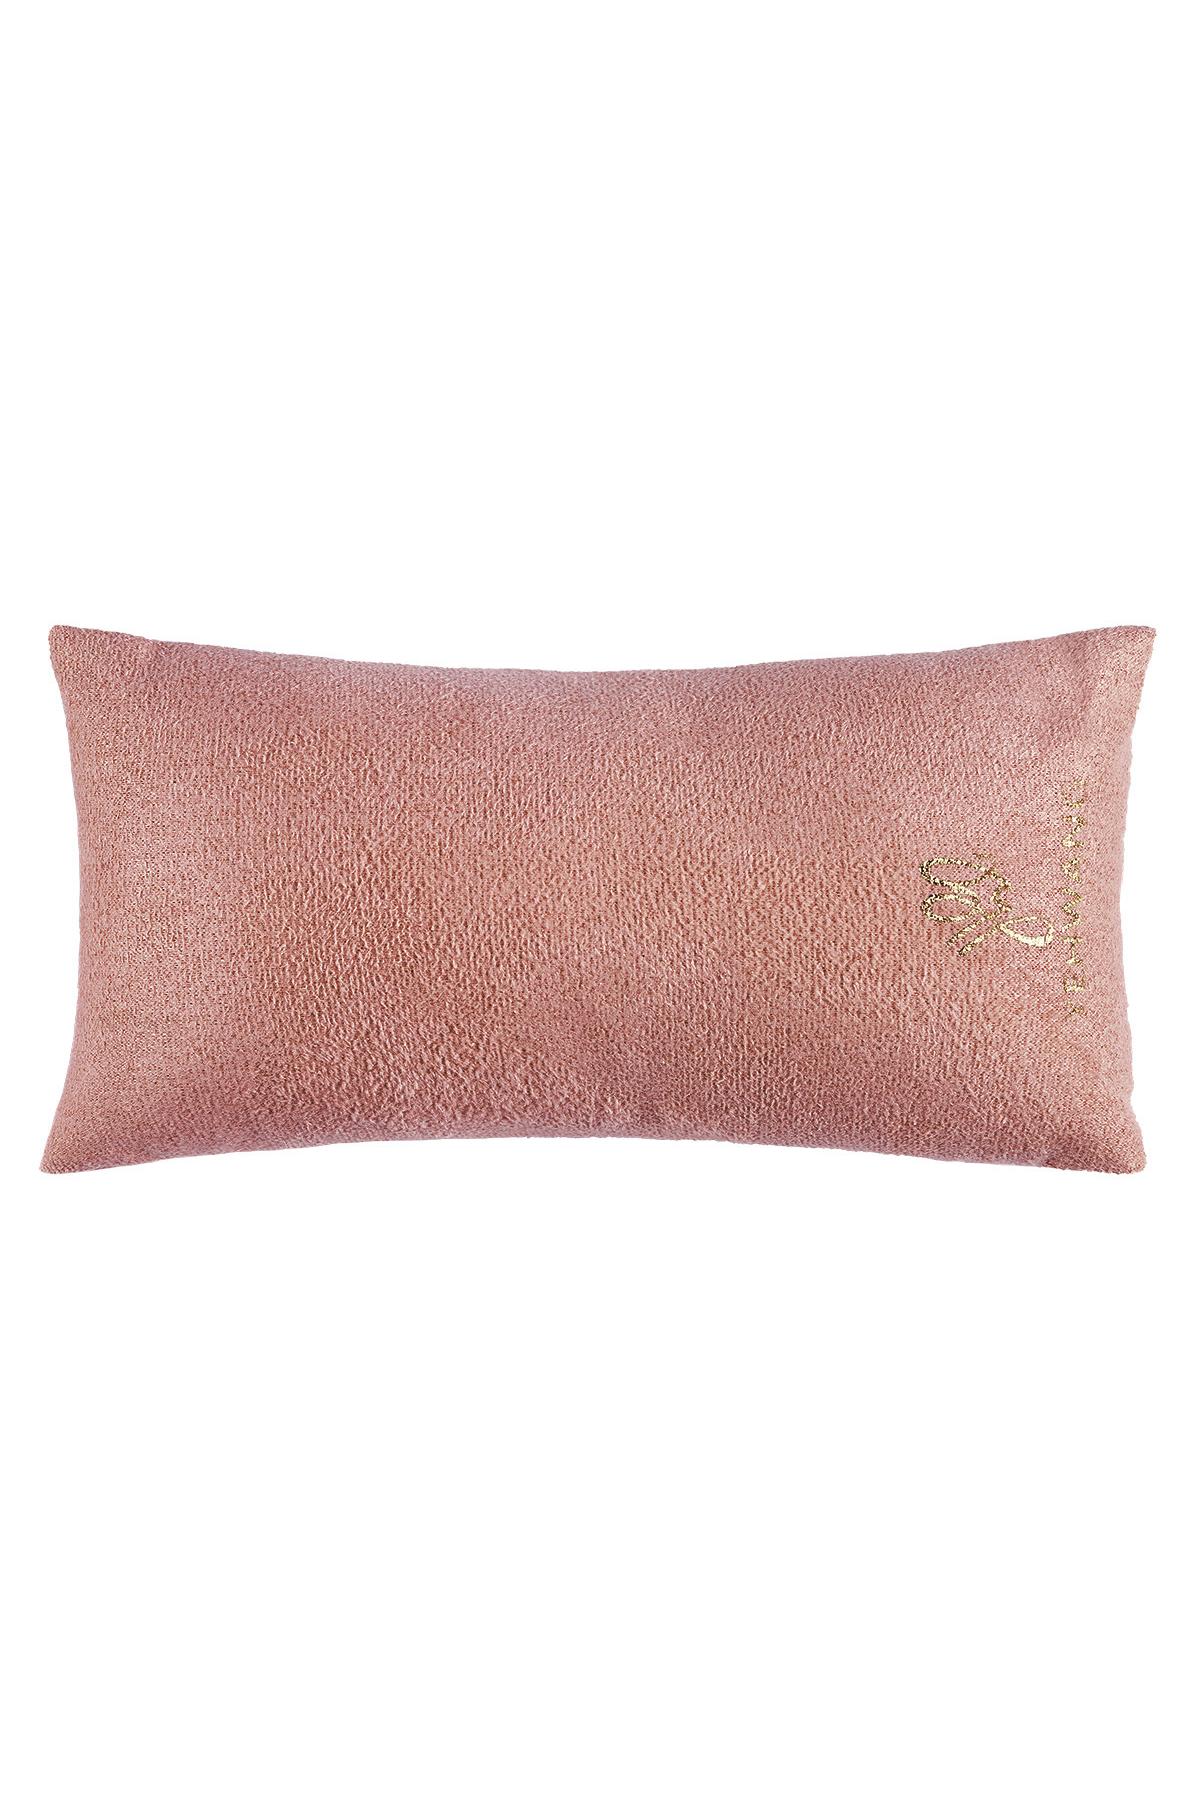 Bilezik yastık Pink Flannel h5 